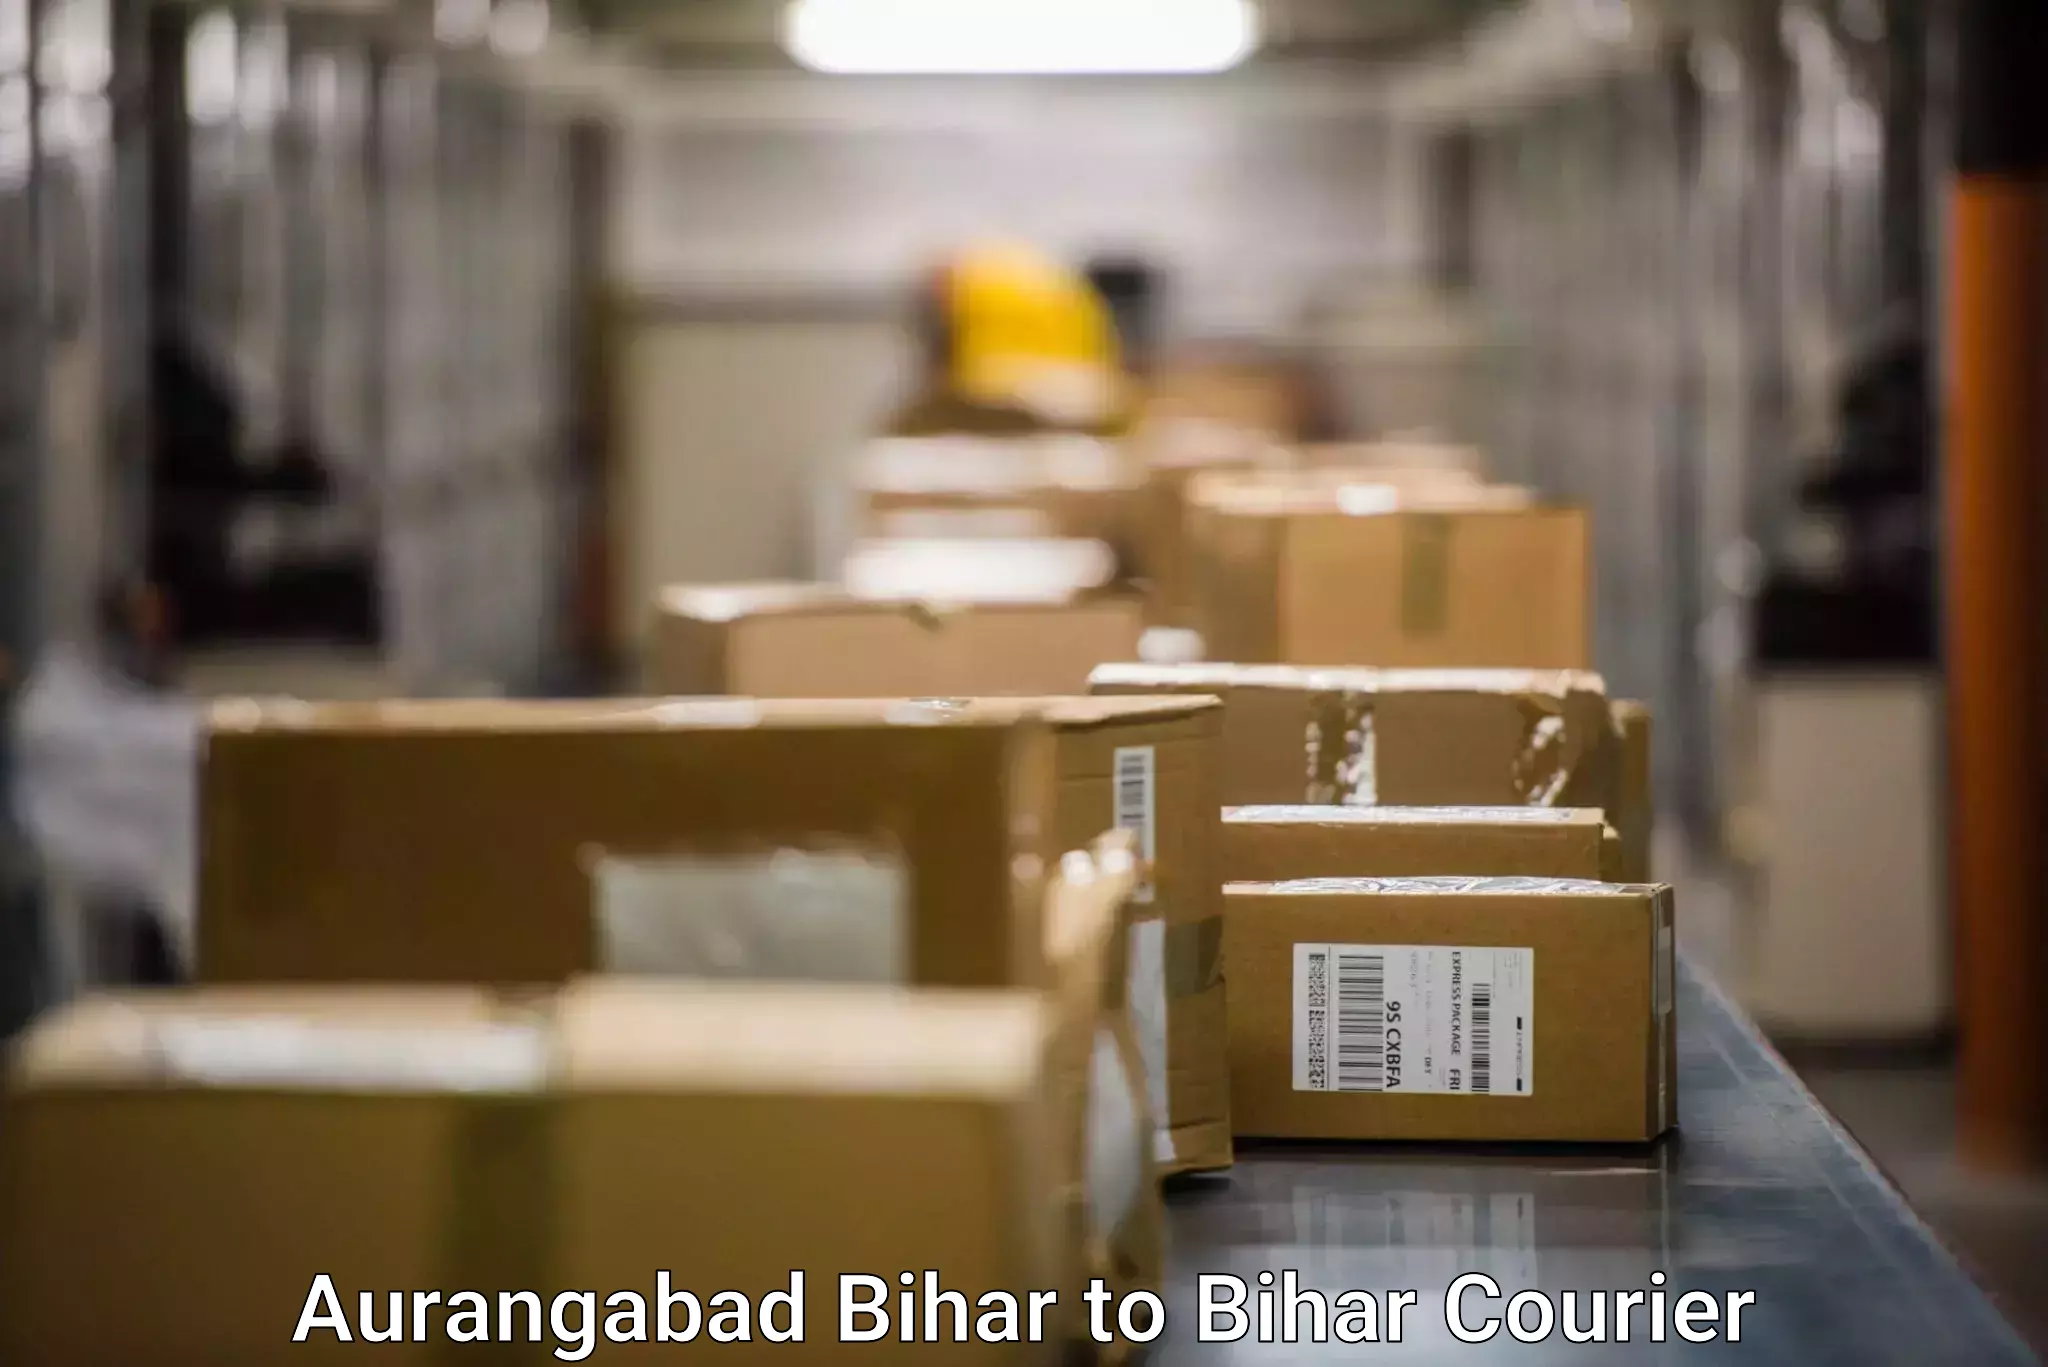 Express postal services Aurangabad Bihar to Araria